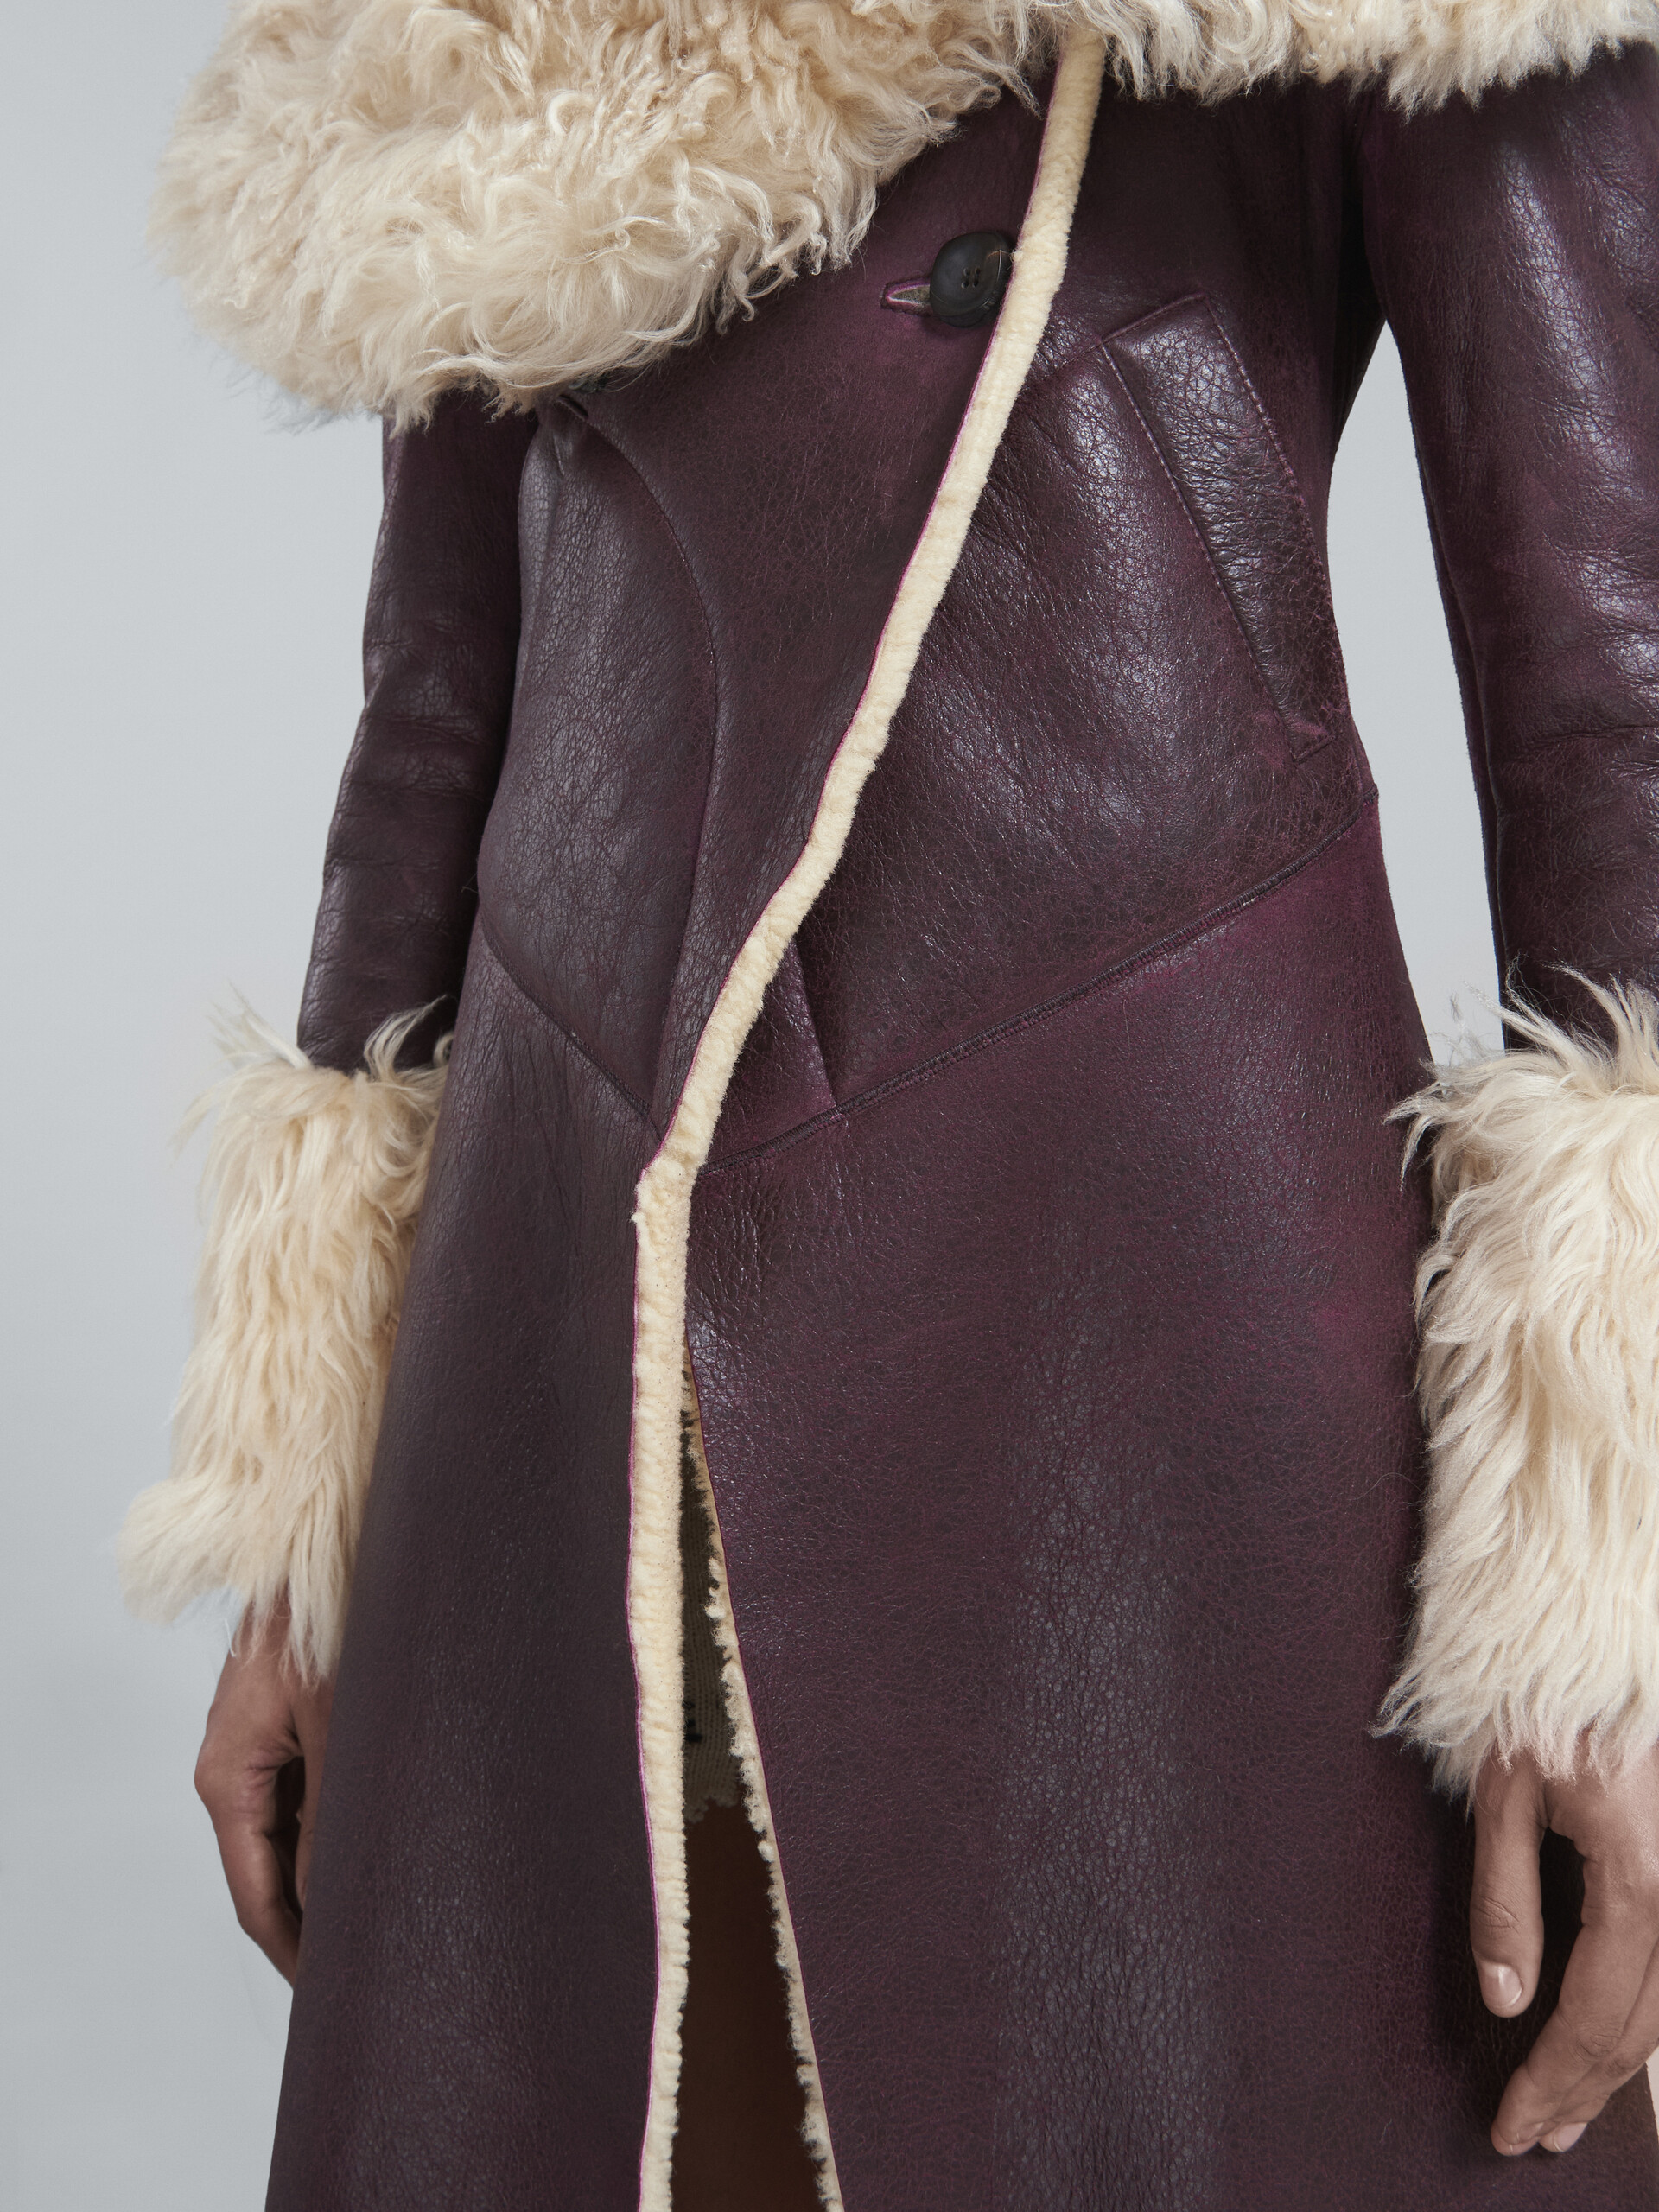 Burgundy shearling coat - Coat - Image 5